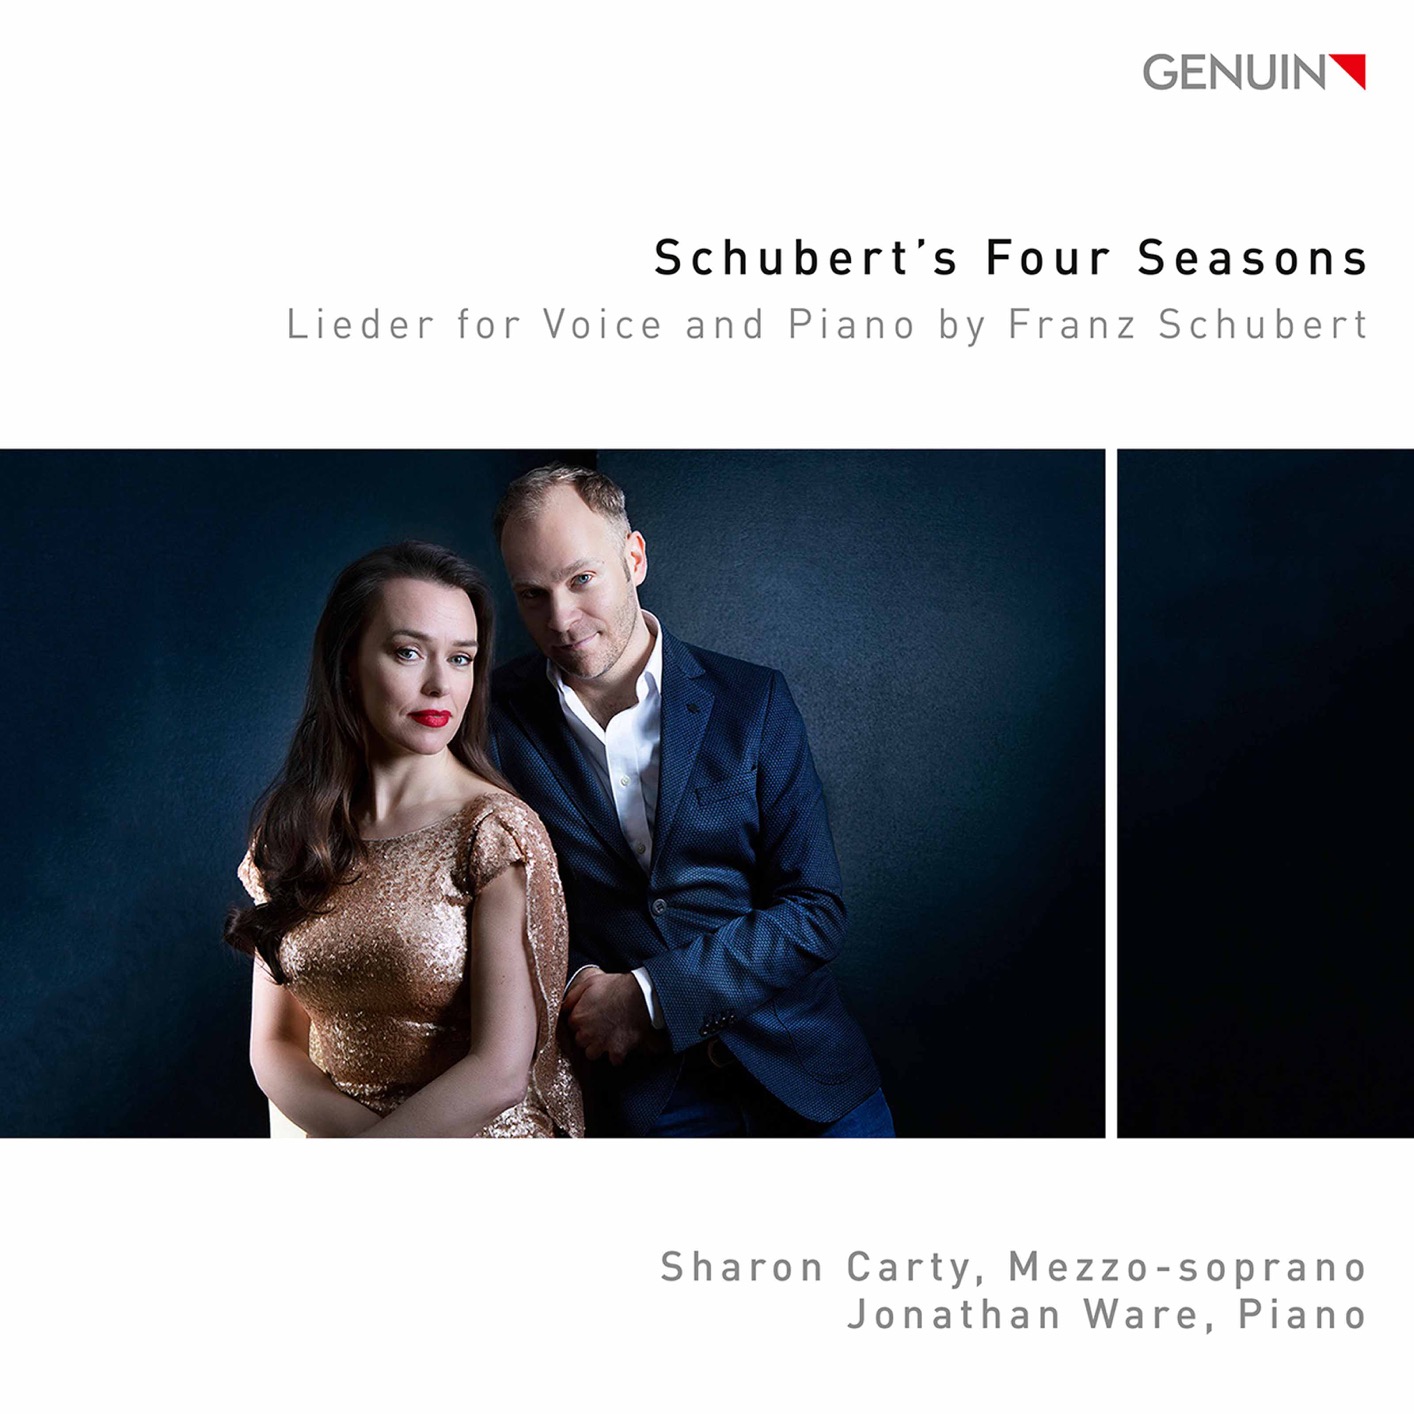 Sharon Carty, Jonathan Ware - Schubert’s Four Seasons - Lieder for Voice & Piano by Franz Schubert (2020) [FLAC 24bit/96kHz]